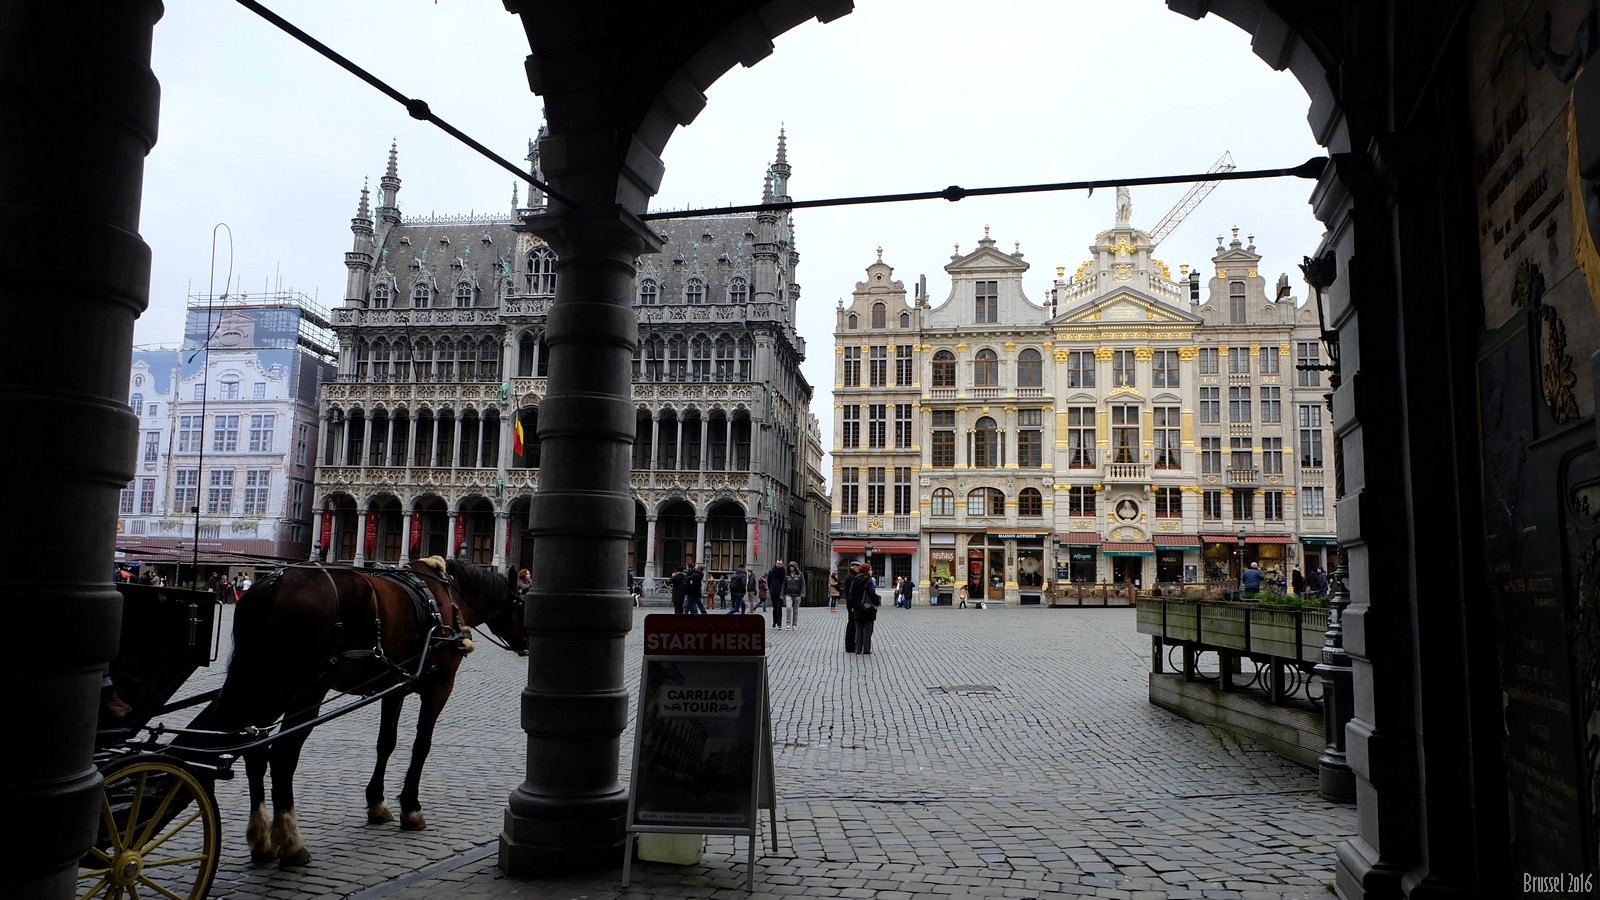 Brussel, Belgium